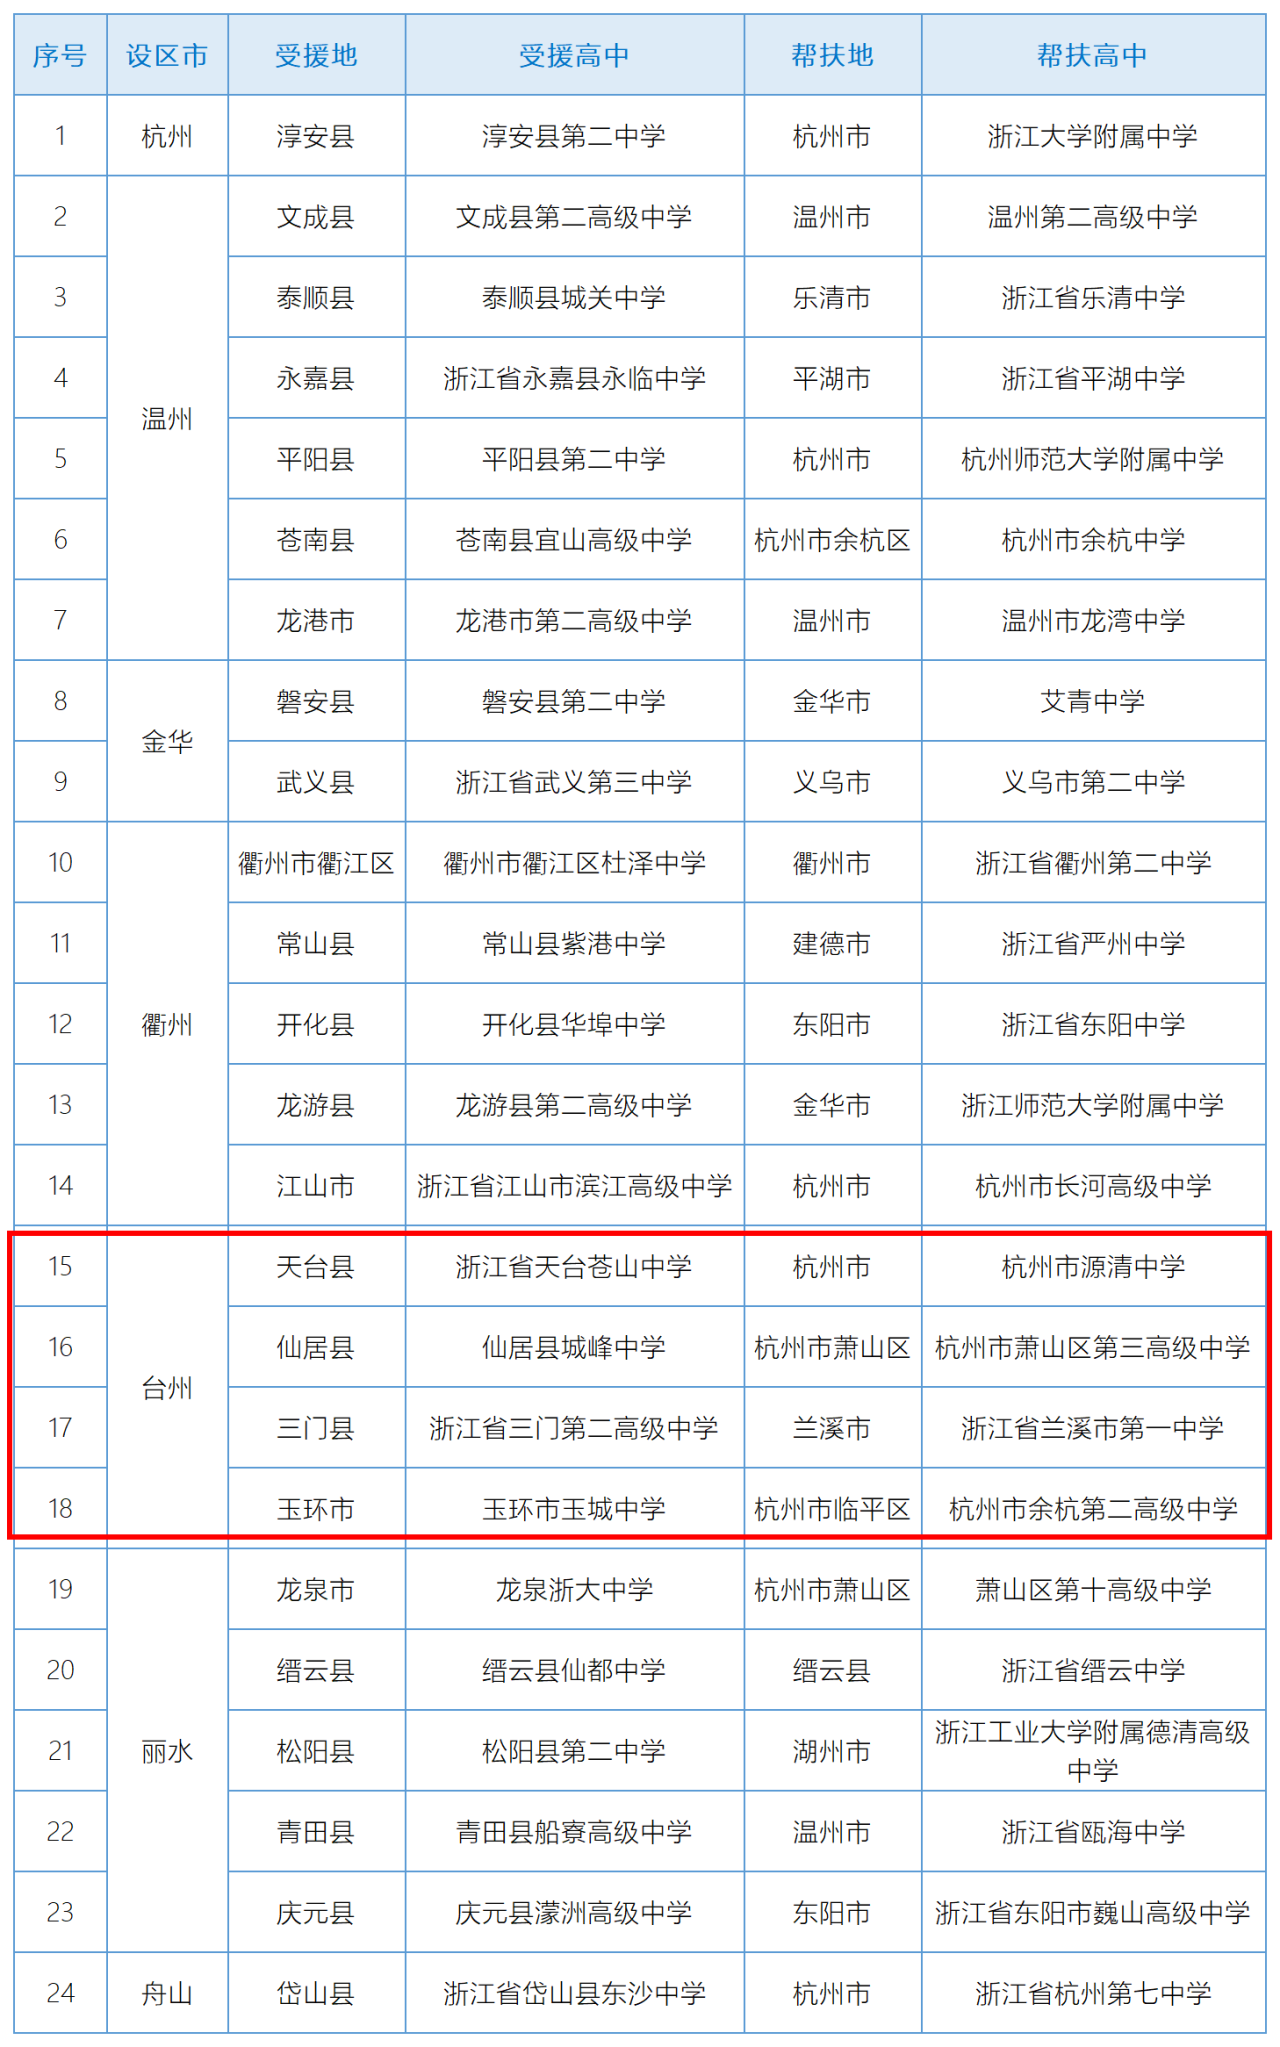 仙居城峰中学老师名单图片